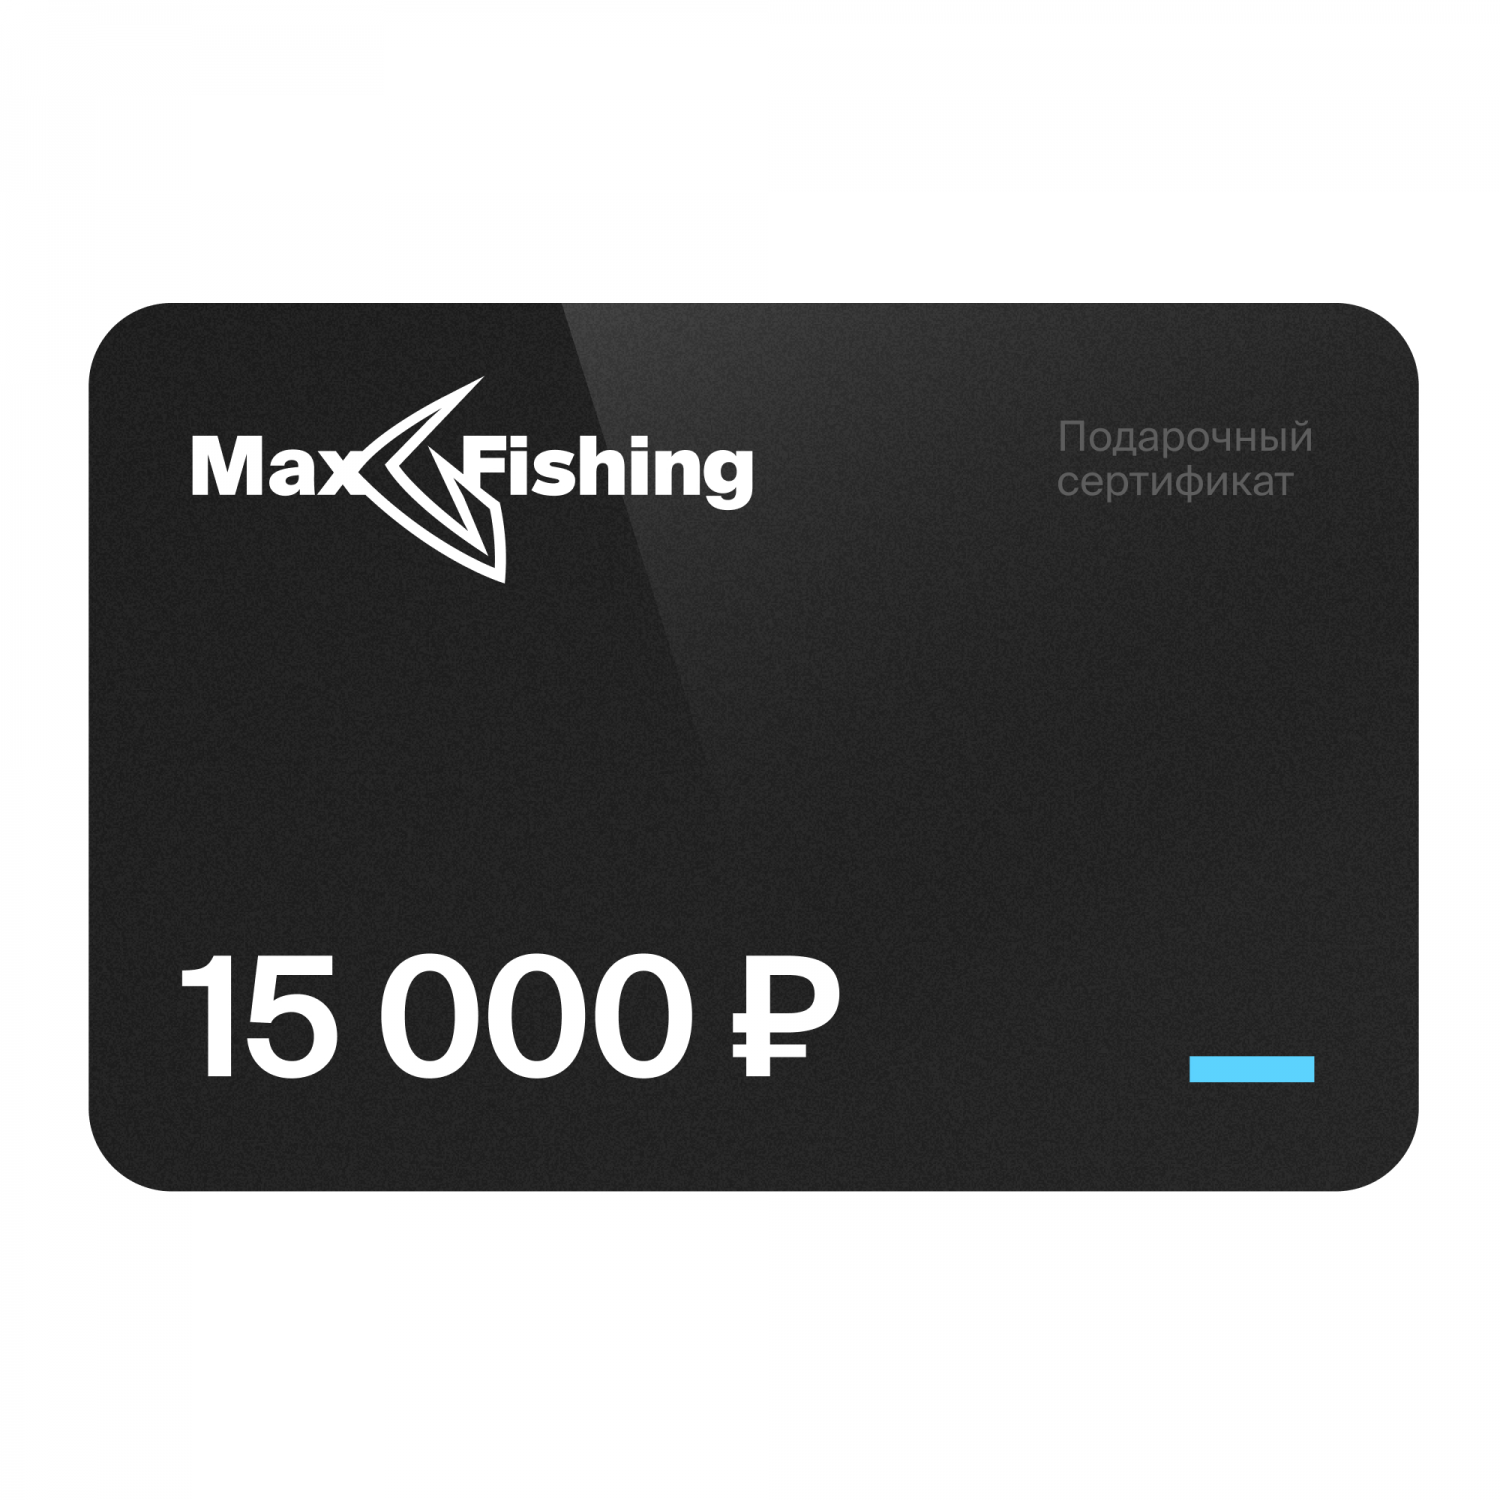 Подарочный сертификат MaxFishing 15 000 ₽ подарочный сертификат на 5 000 рублей